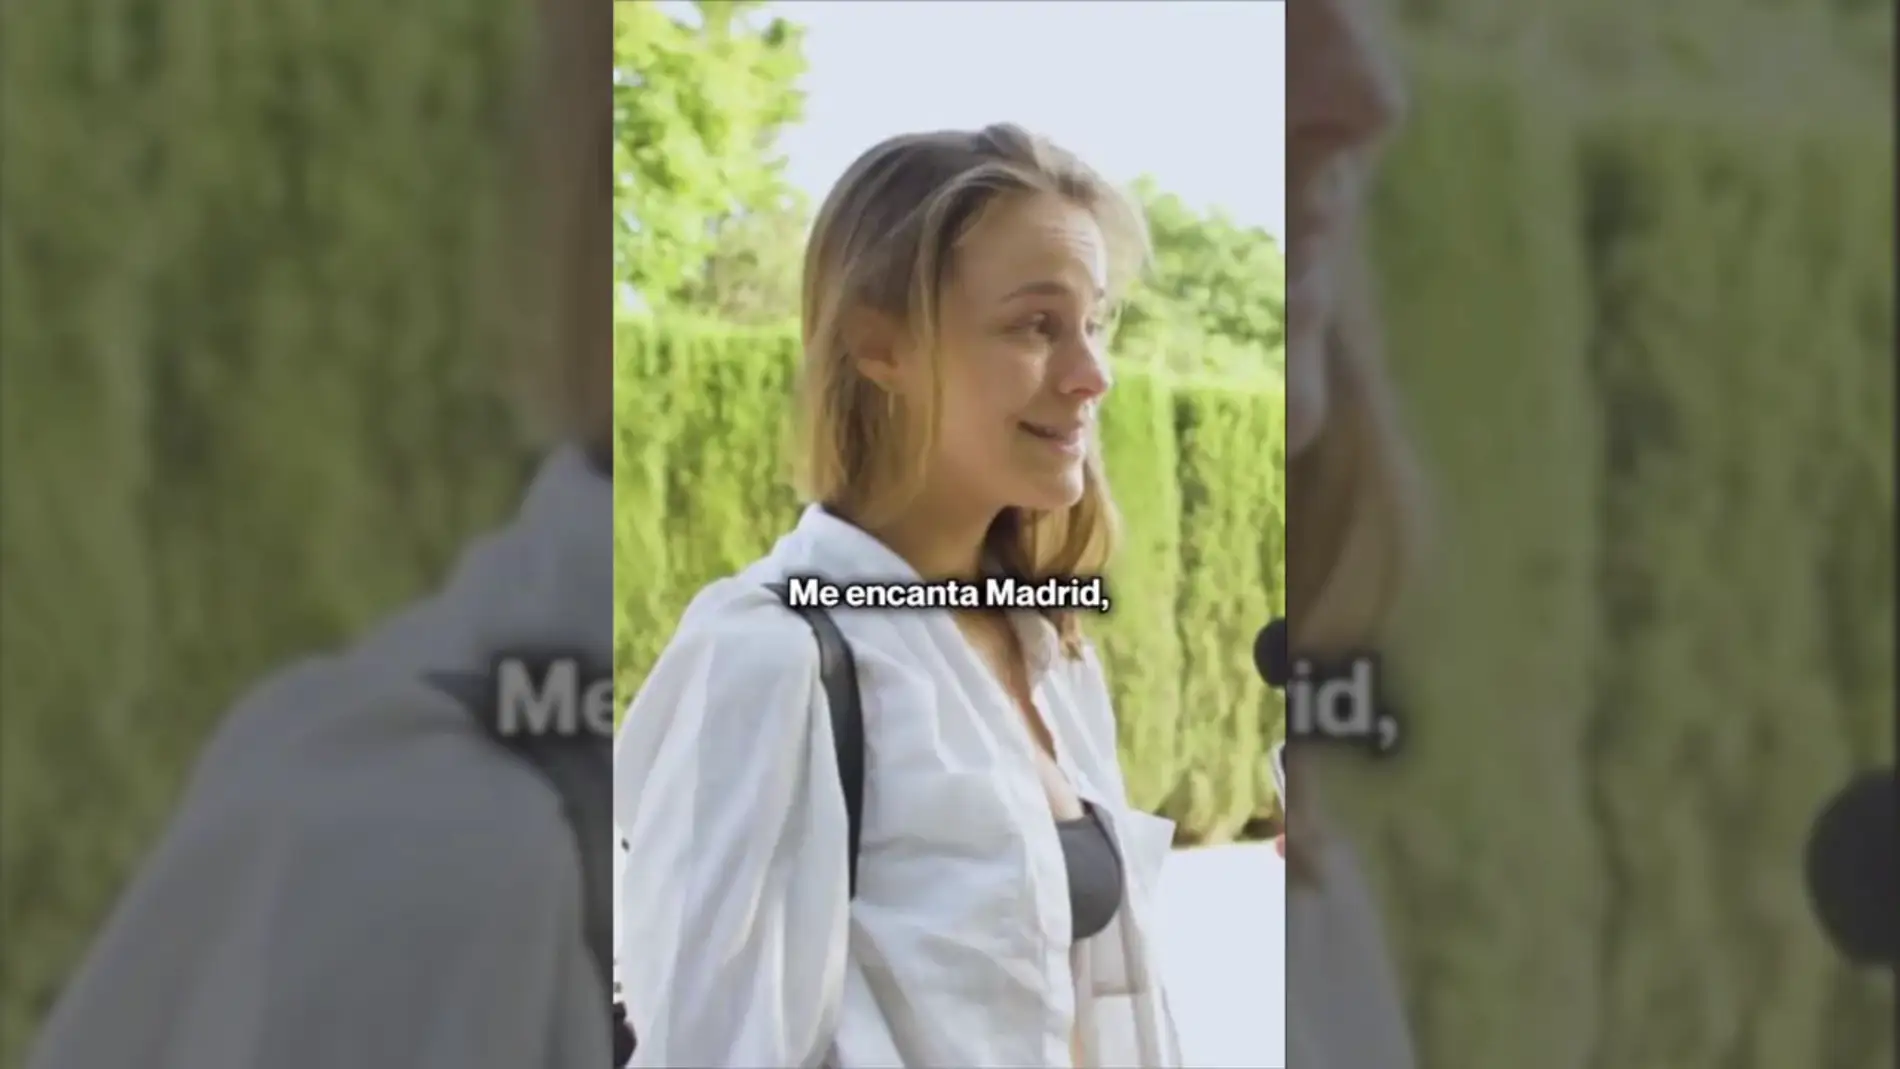 Le preguntan a una turista italiana qué es lo que más le gusta de Madrid y su respuesta se hace viral